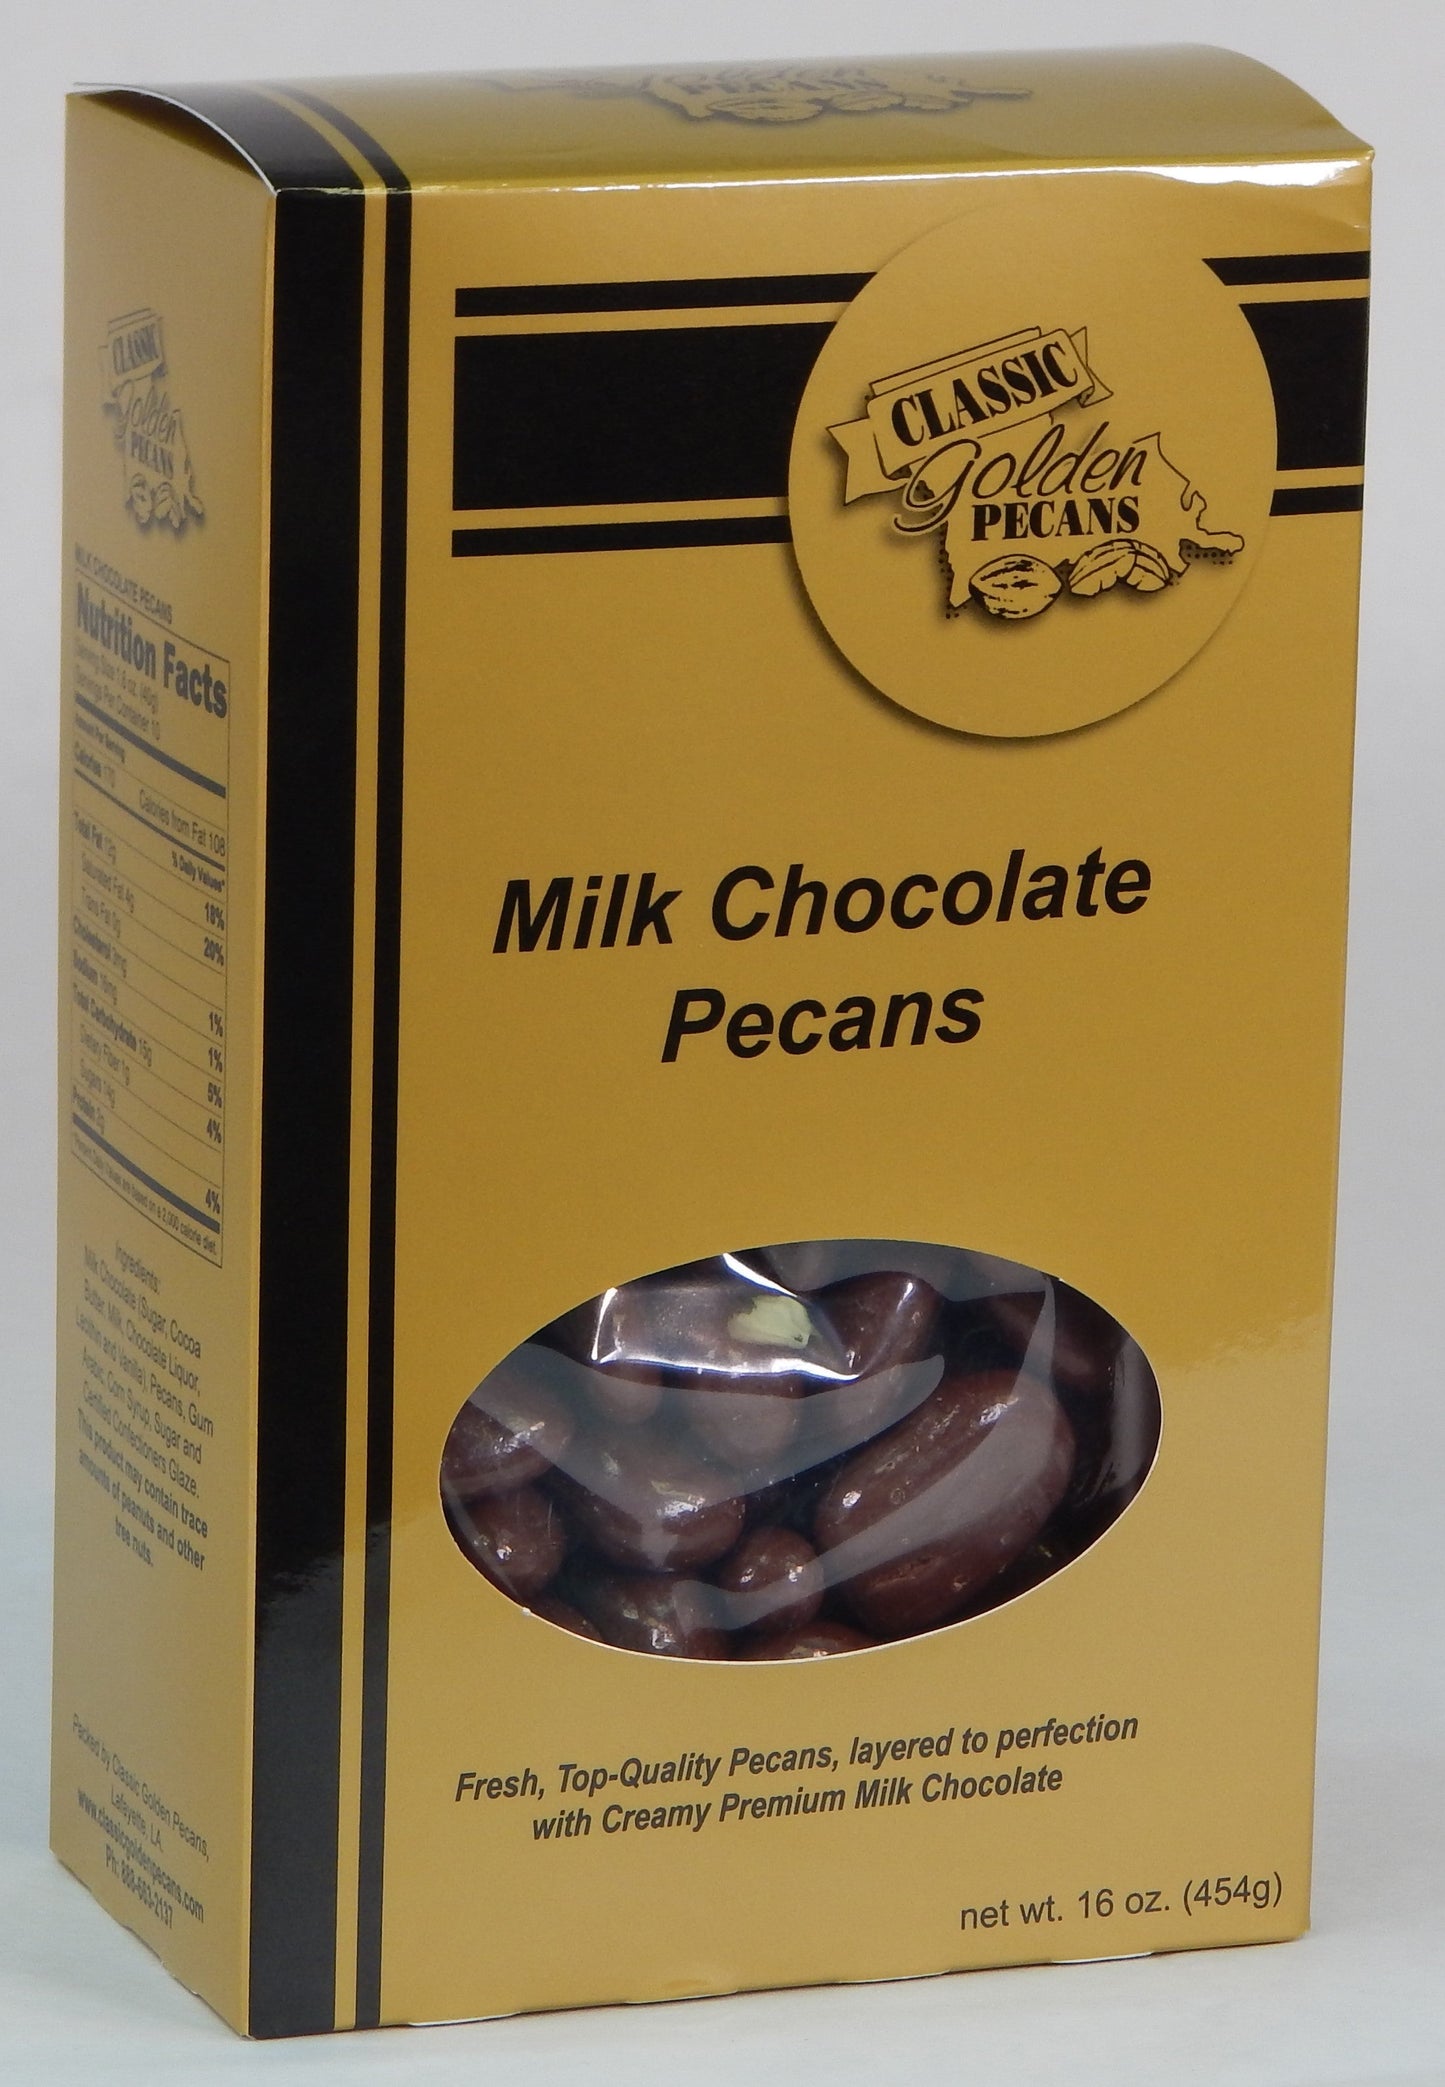 Milk Chocolate Pecans by Classic Golden Pecans